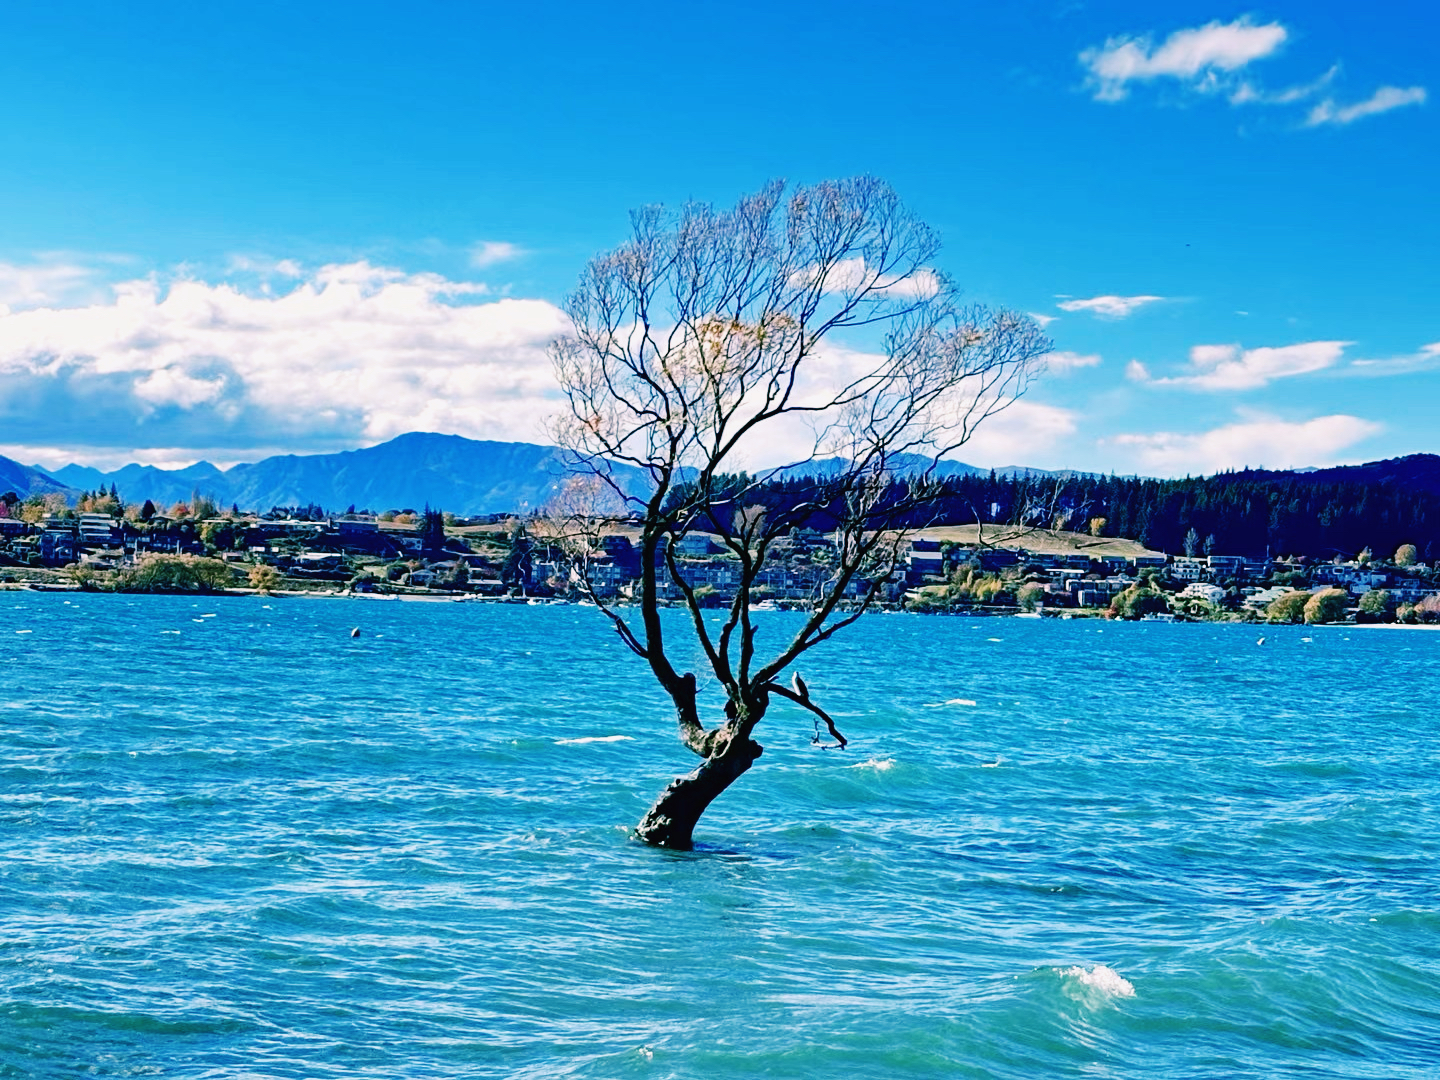 #春天玩点花的 到瓦纳卡湖看歪脖树吧。  图一这棵树不知道怎么就成了网红点🔴就是那棵歪脖树[呲牙] 